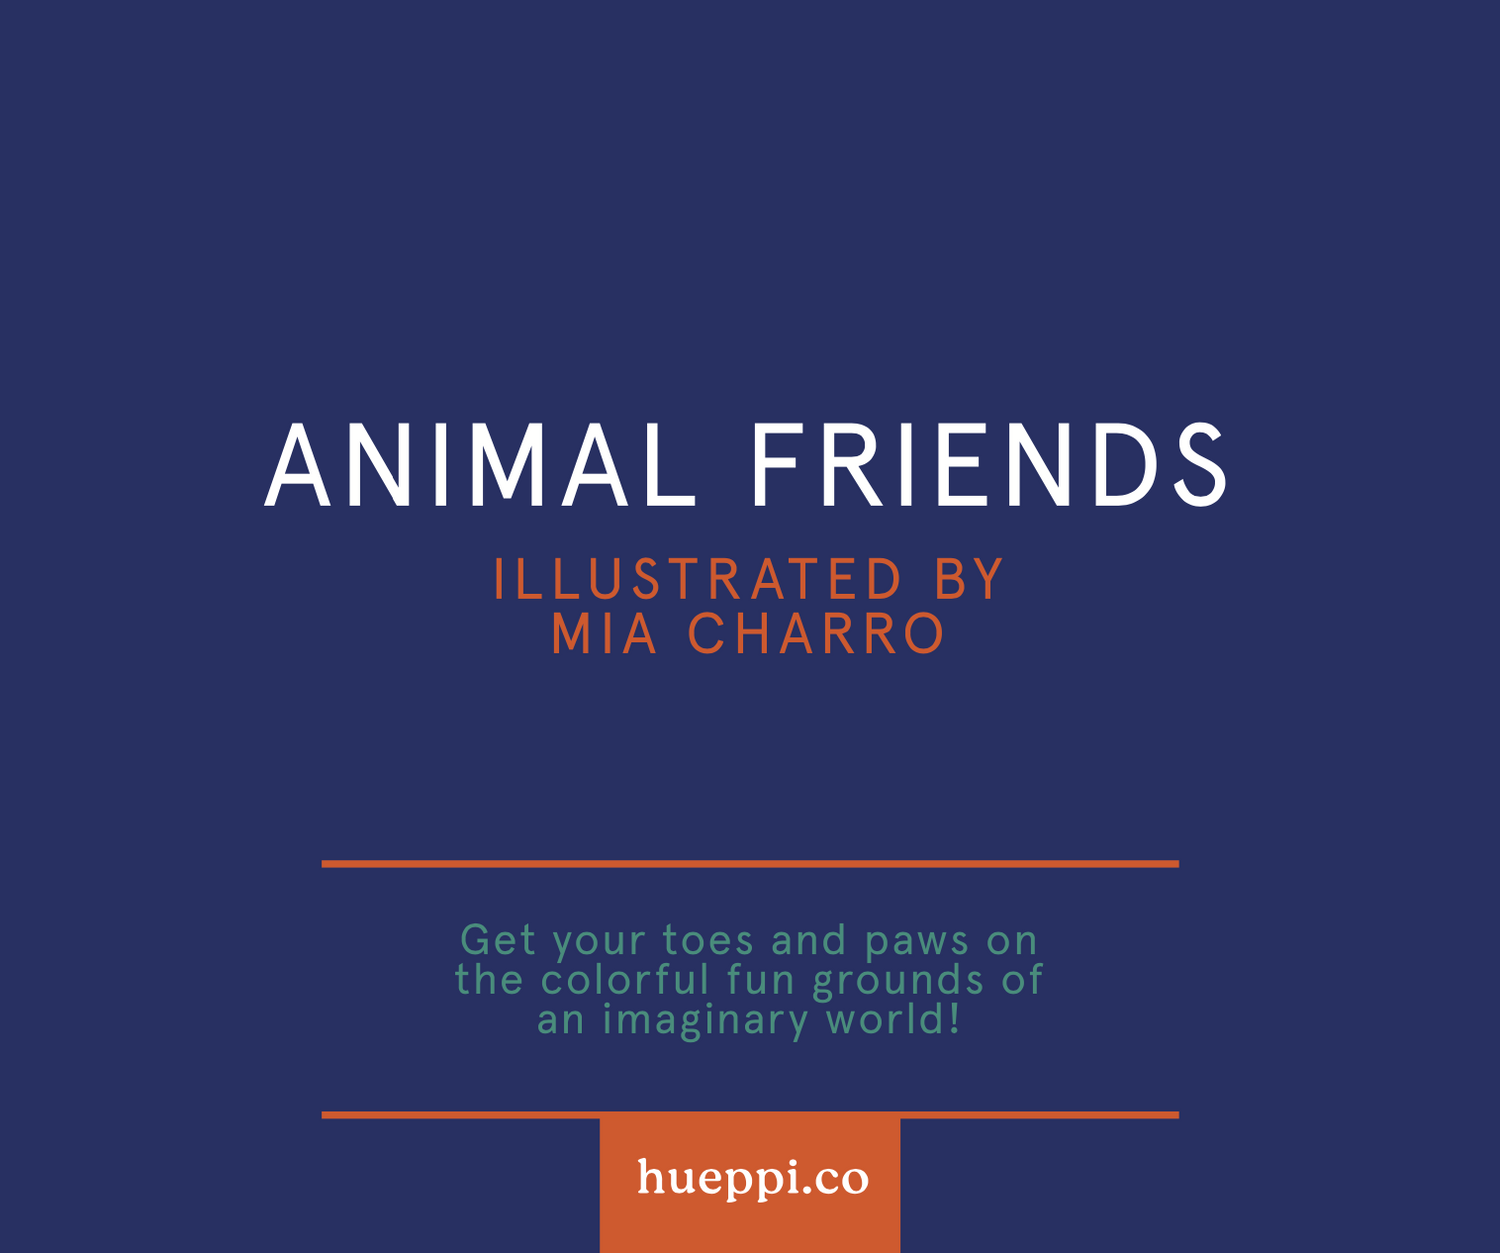 Animal Friends by Mia Charro